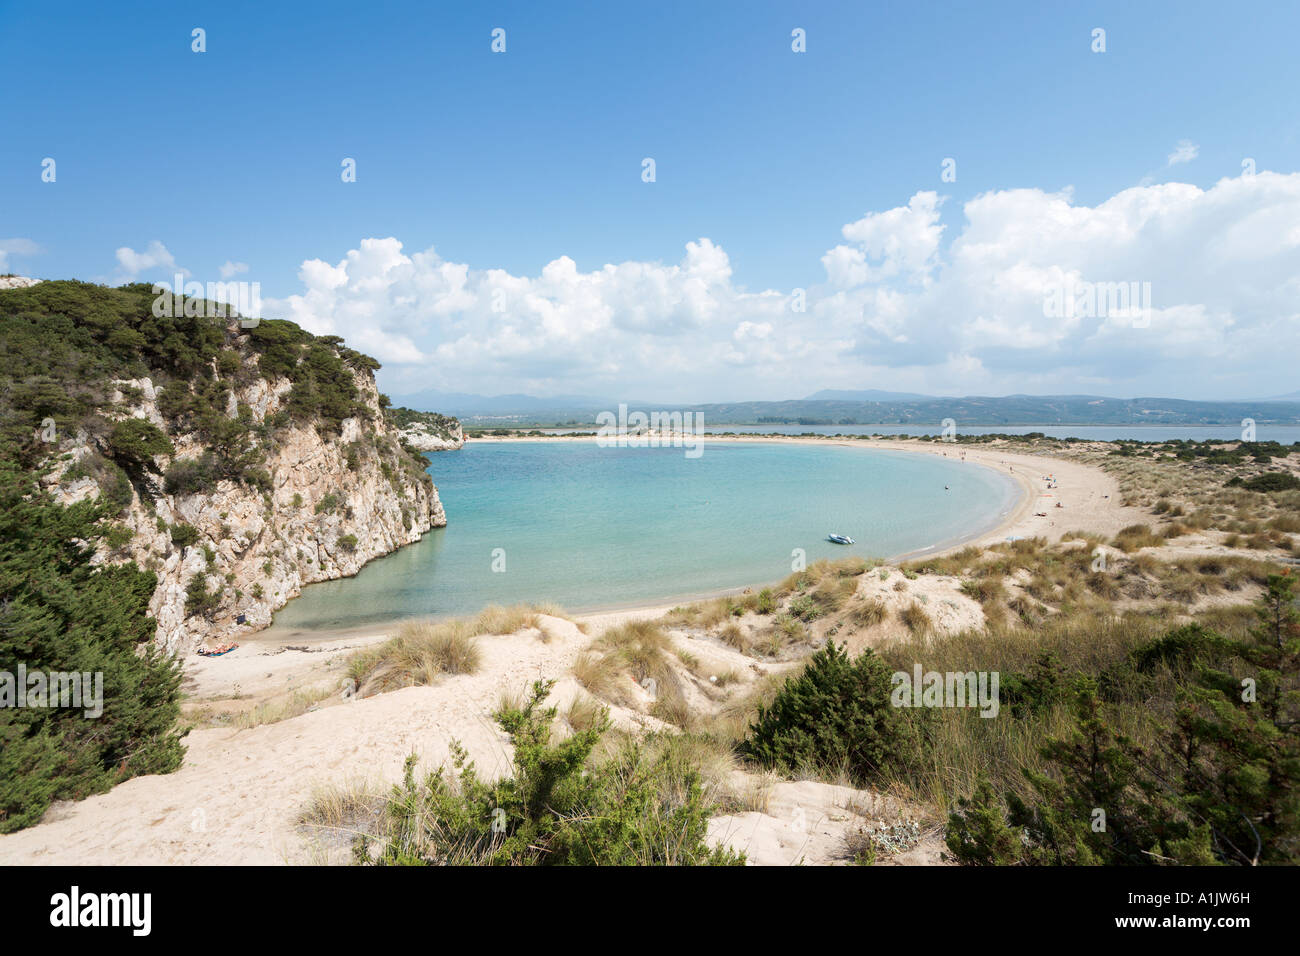 View over Voidokilia Beach, Petrohori near Yialova, Messinia, Peloponnese, Greece Stock Photo